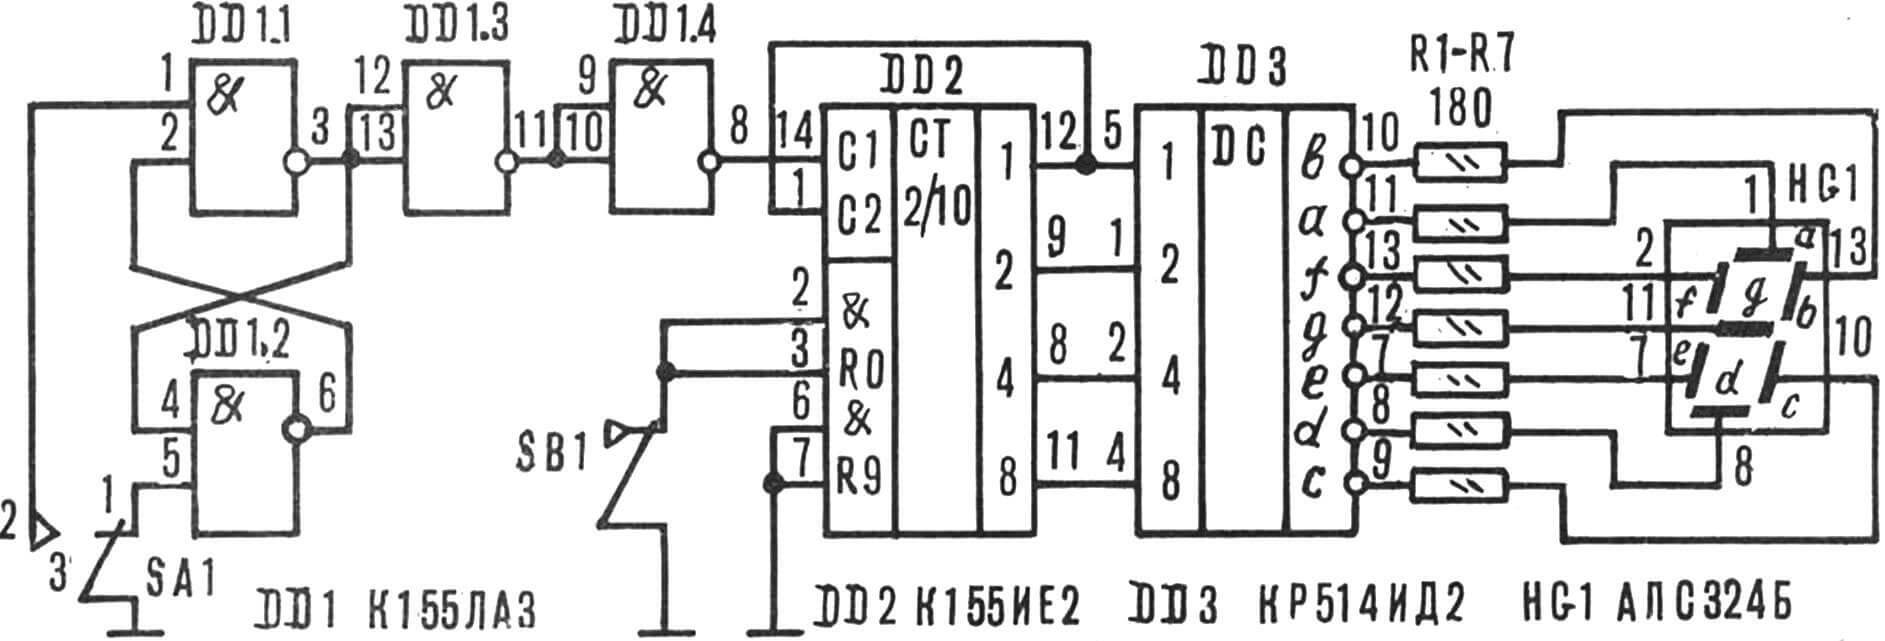 Рис. 2. Принципиальная схема электронного тира.